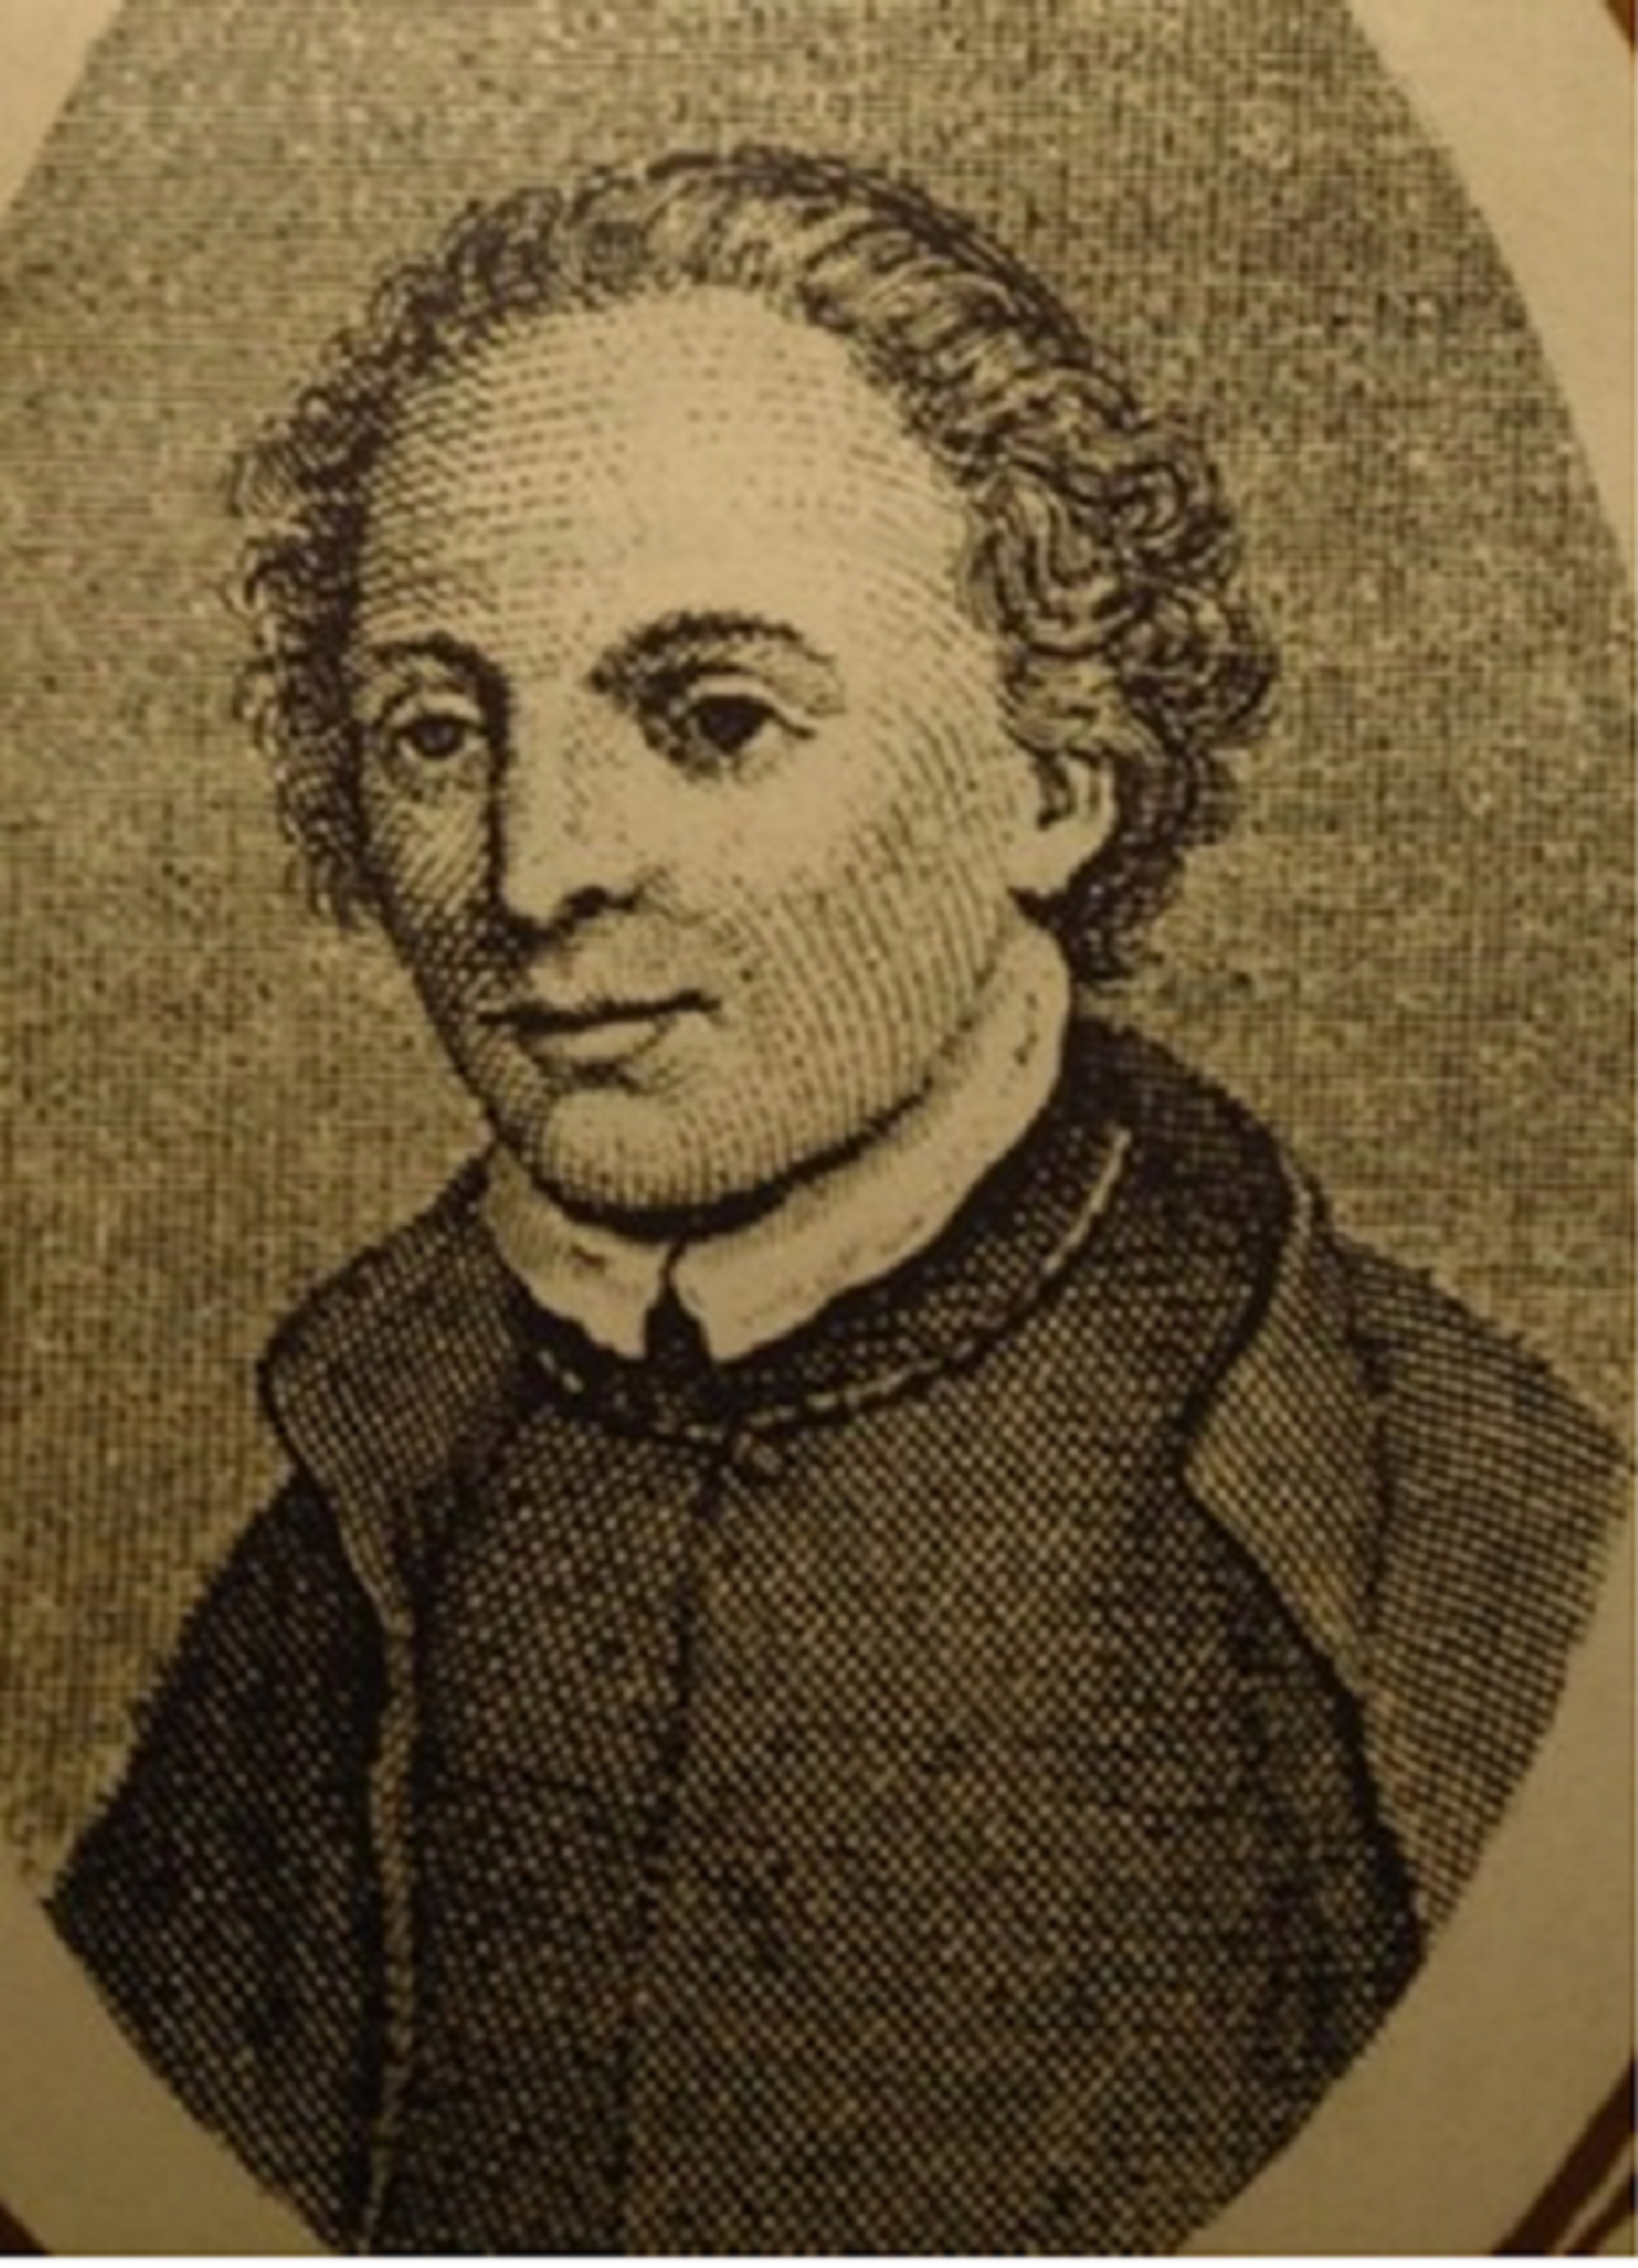 El Rector de Vallfogona, el poeta barroco que solo escribía en catalán